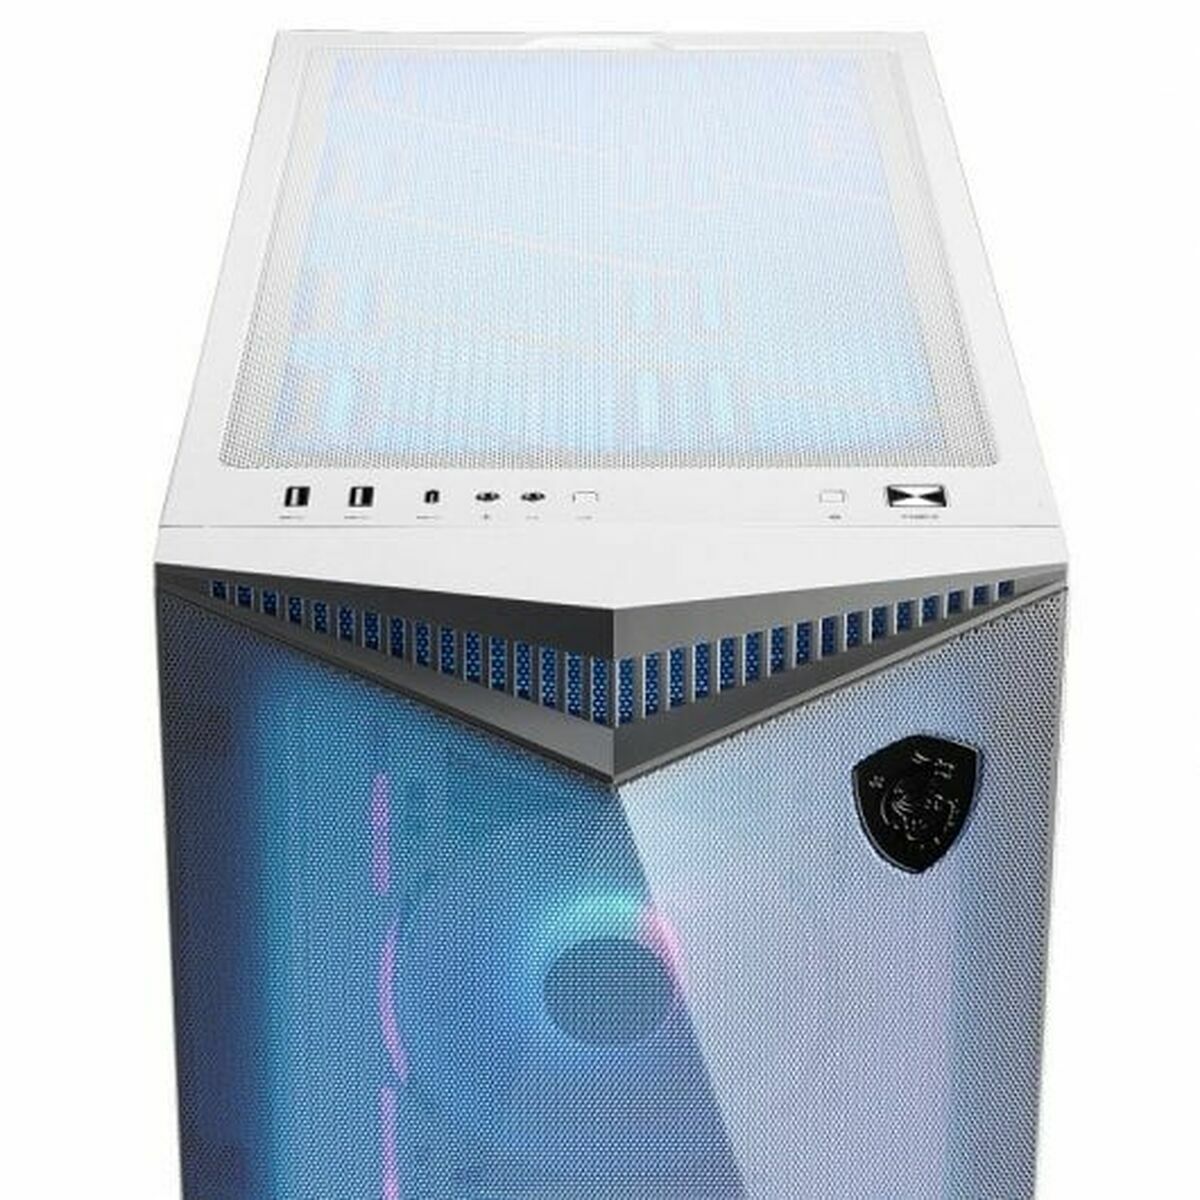 ATX Semi-tower Box MSI White